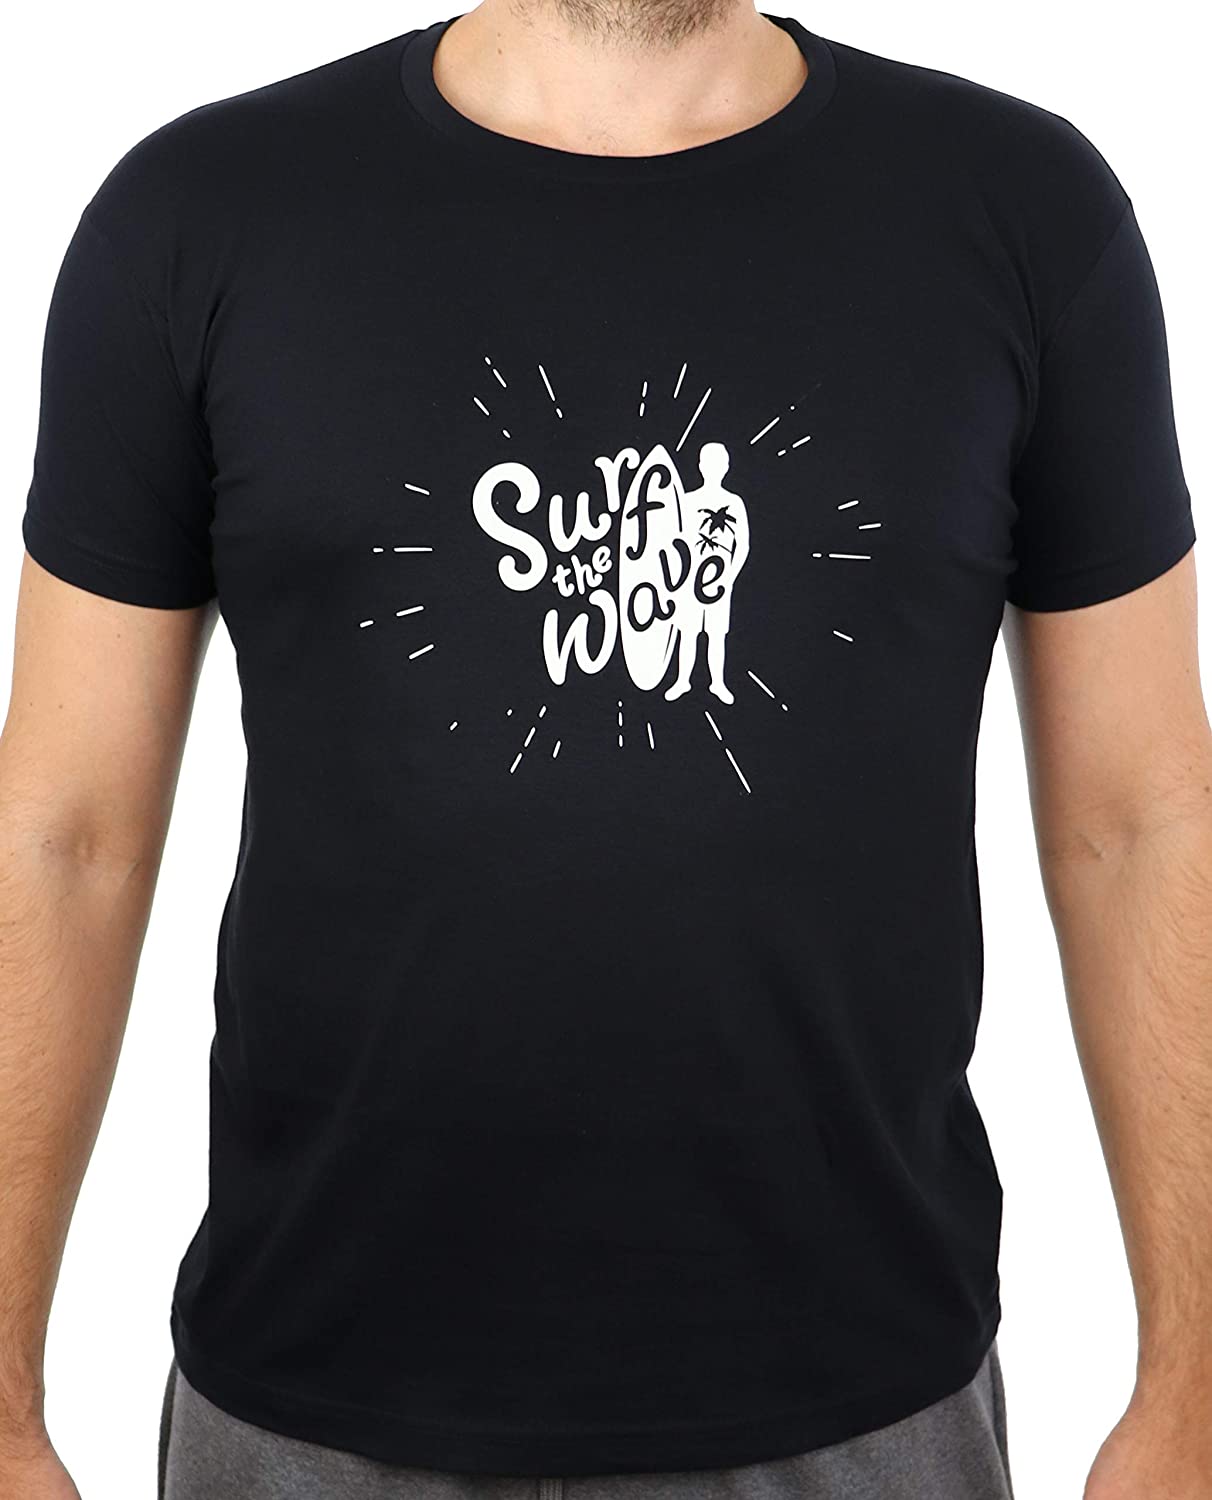 Surf-T-Shirt, Schwarzes T-Shirt mit weissem Aufdruck Surf The Wave, Surfgrafik, Surfer (Surf The Wave, XS)